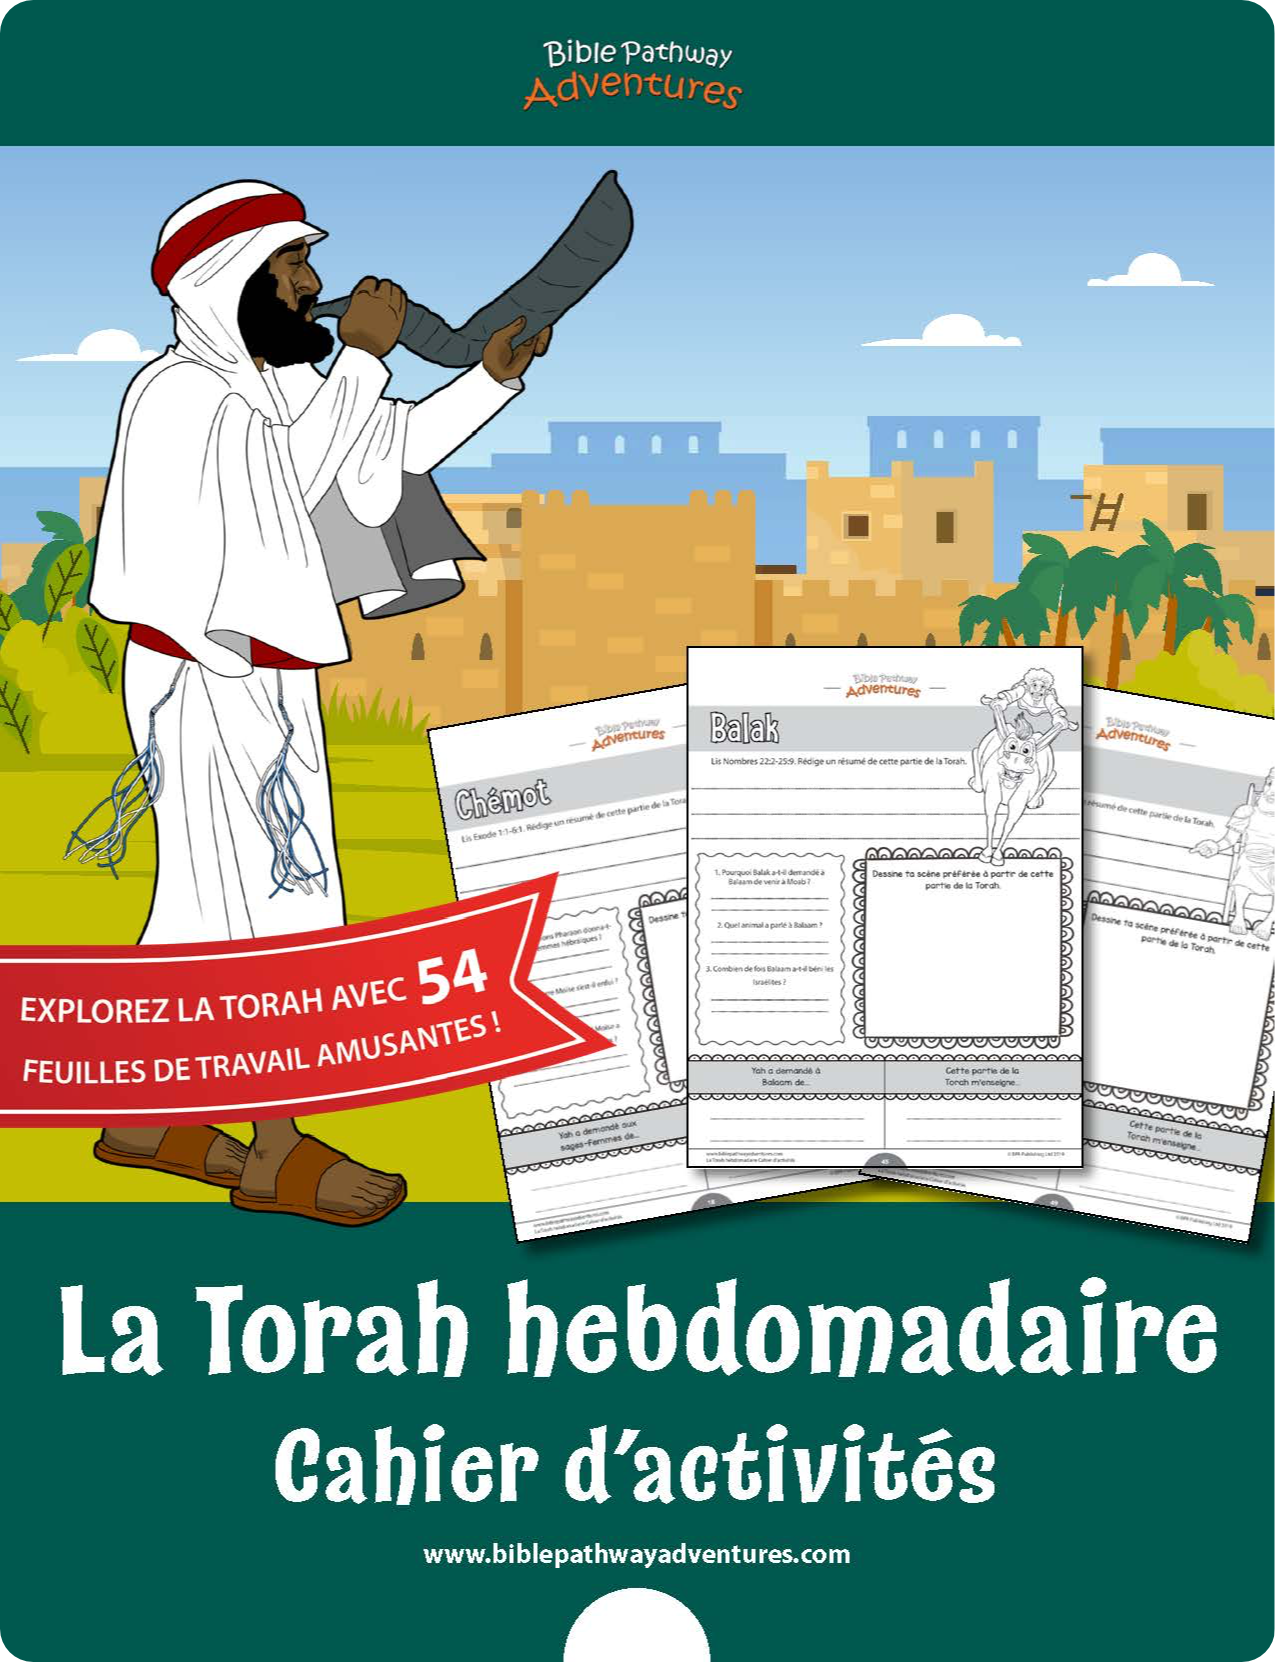 La Torah hebdomadaire Cahier d’activités (PDF)